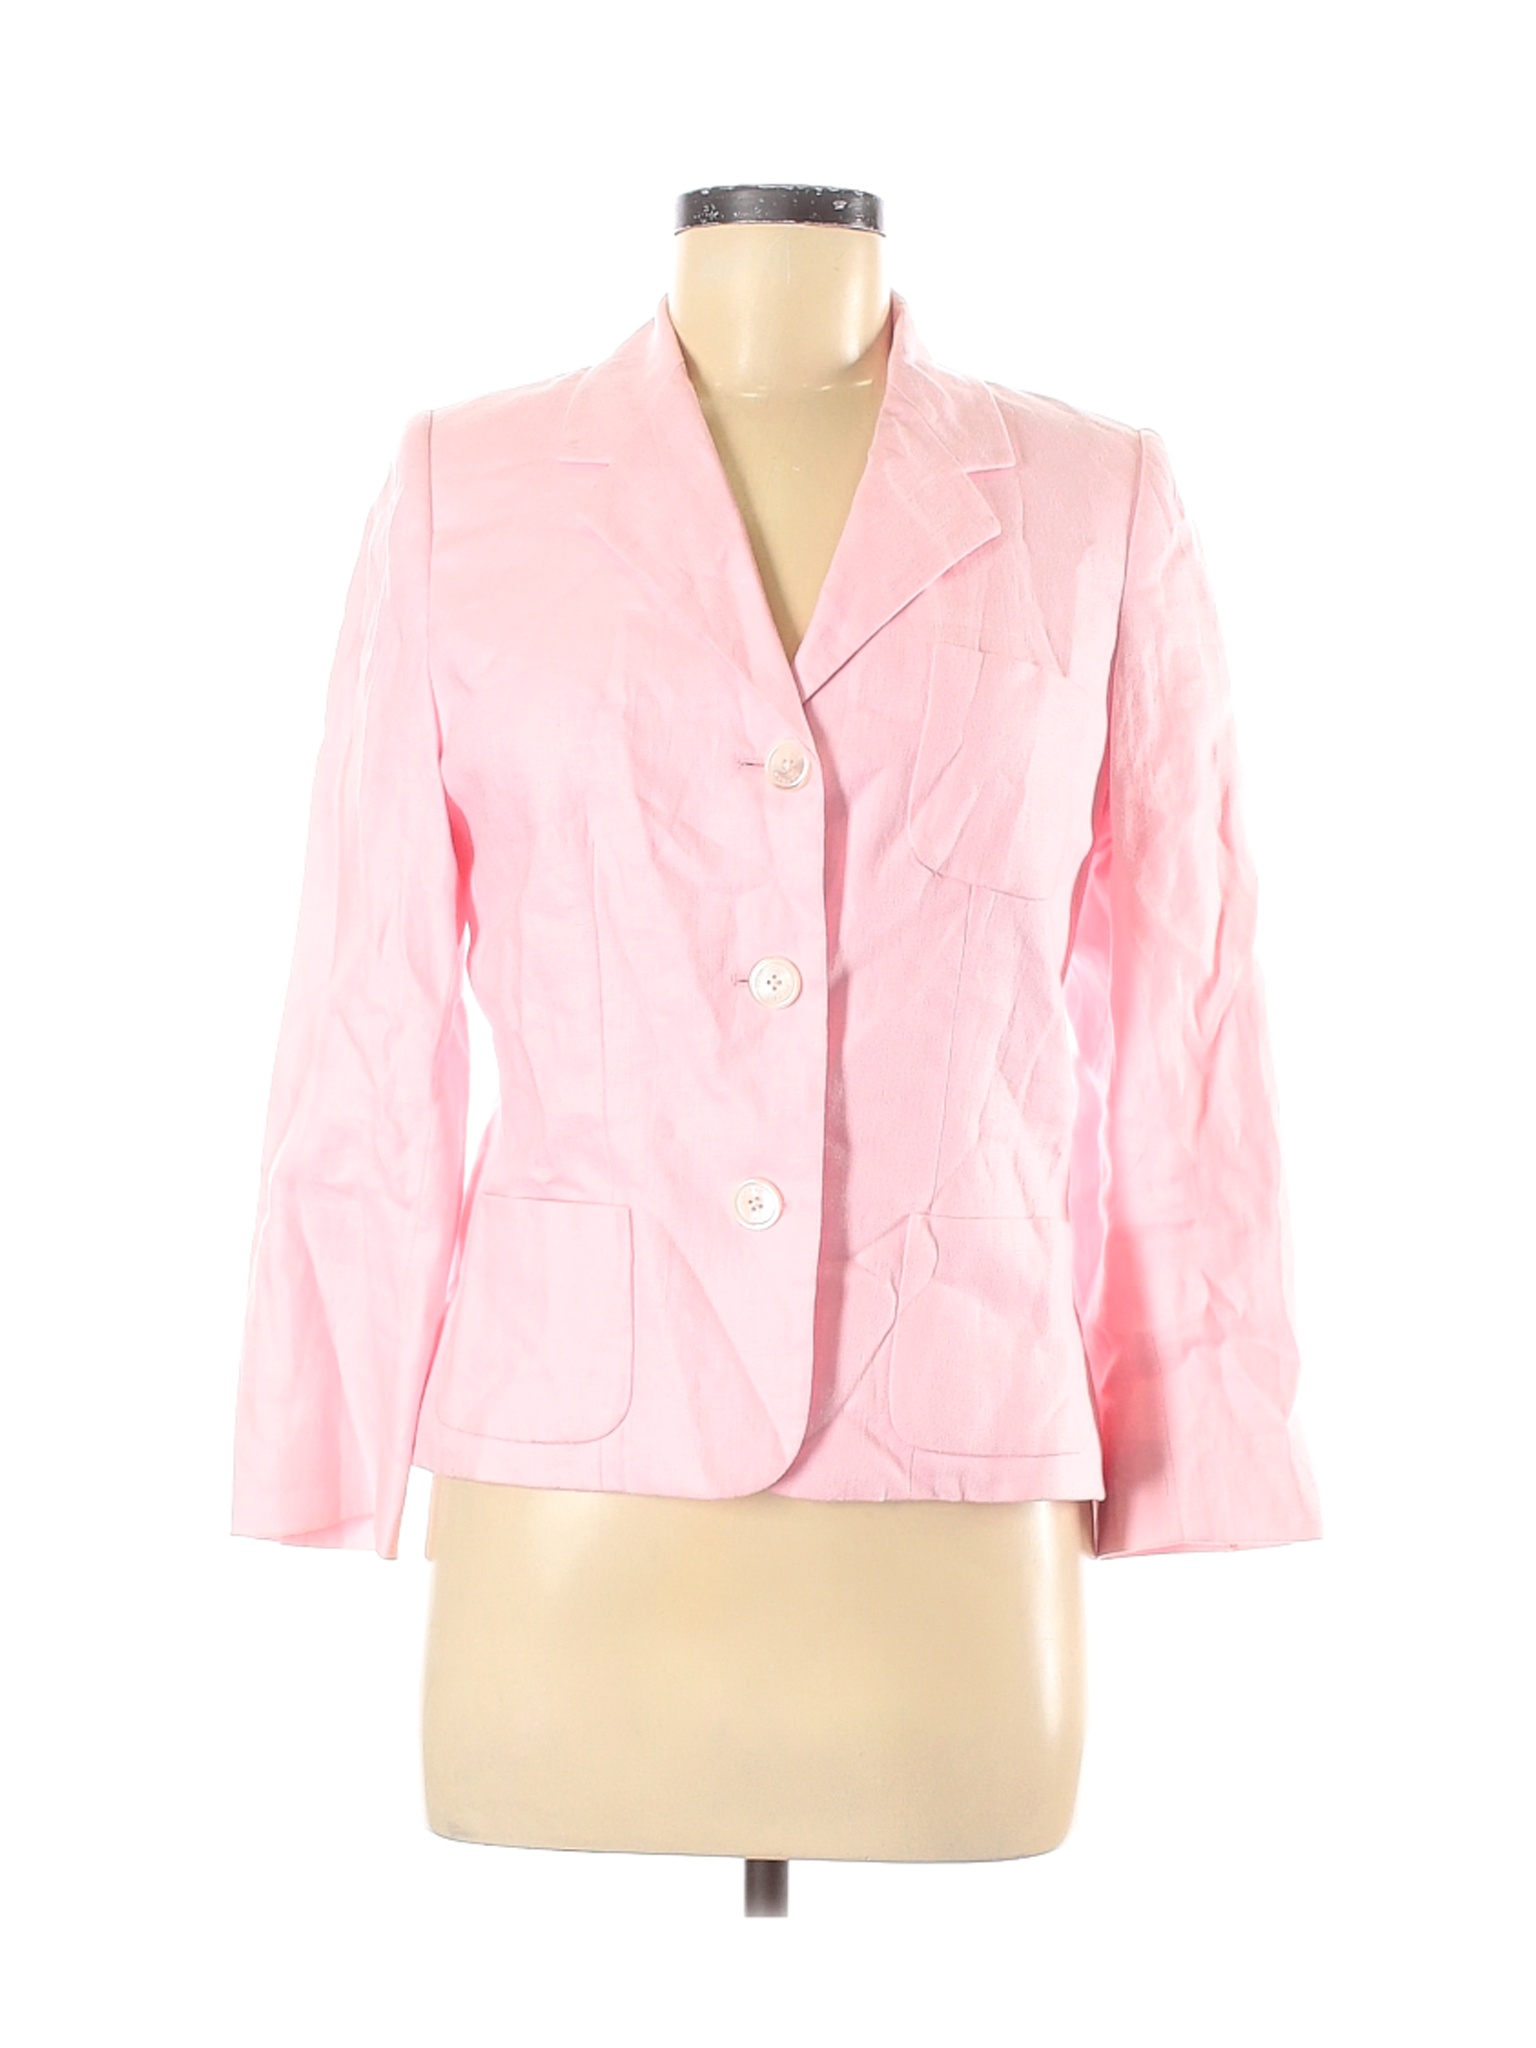 Lauren by Ralph Lauren Women Pink Blazer 8 | eBay